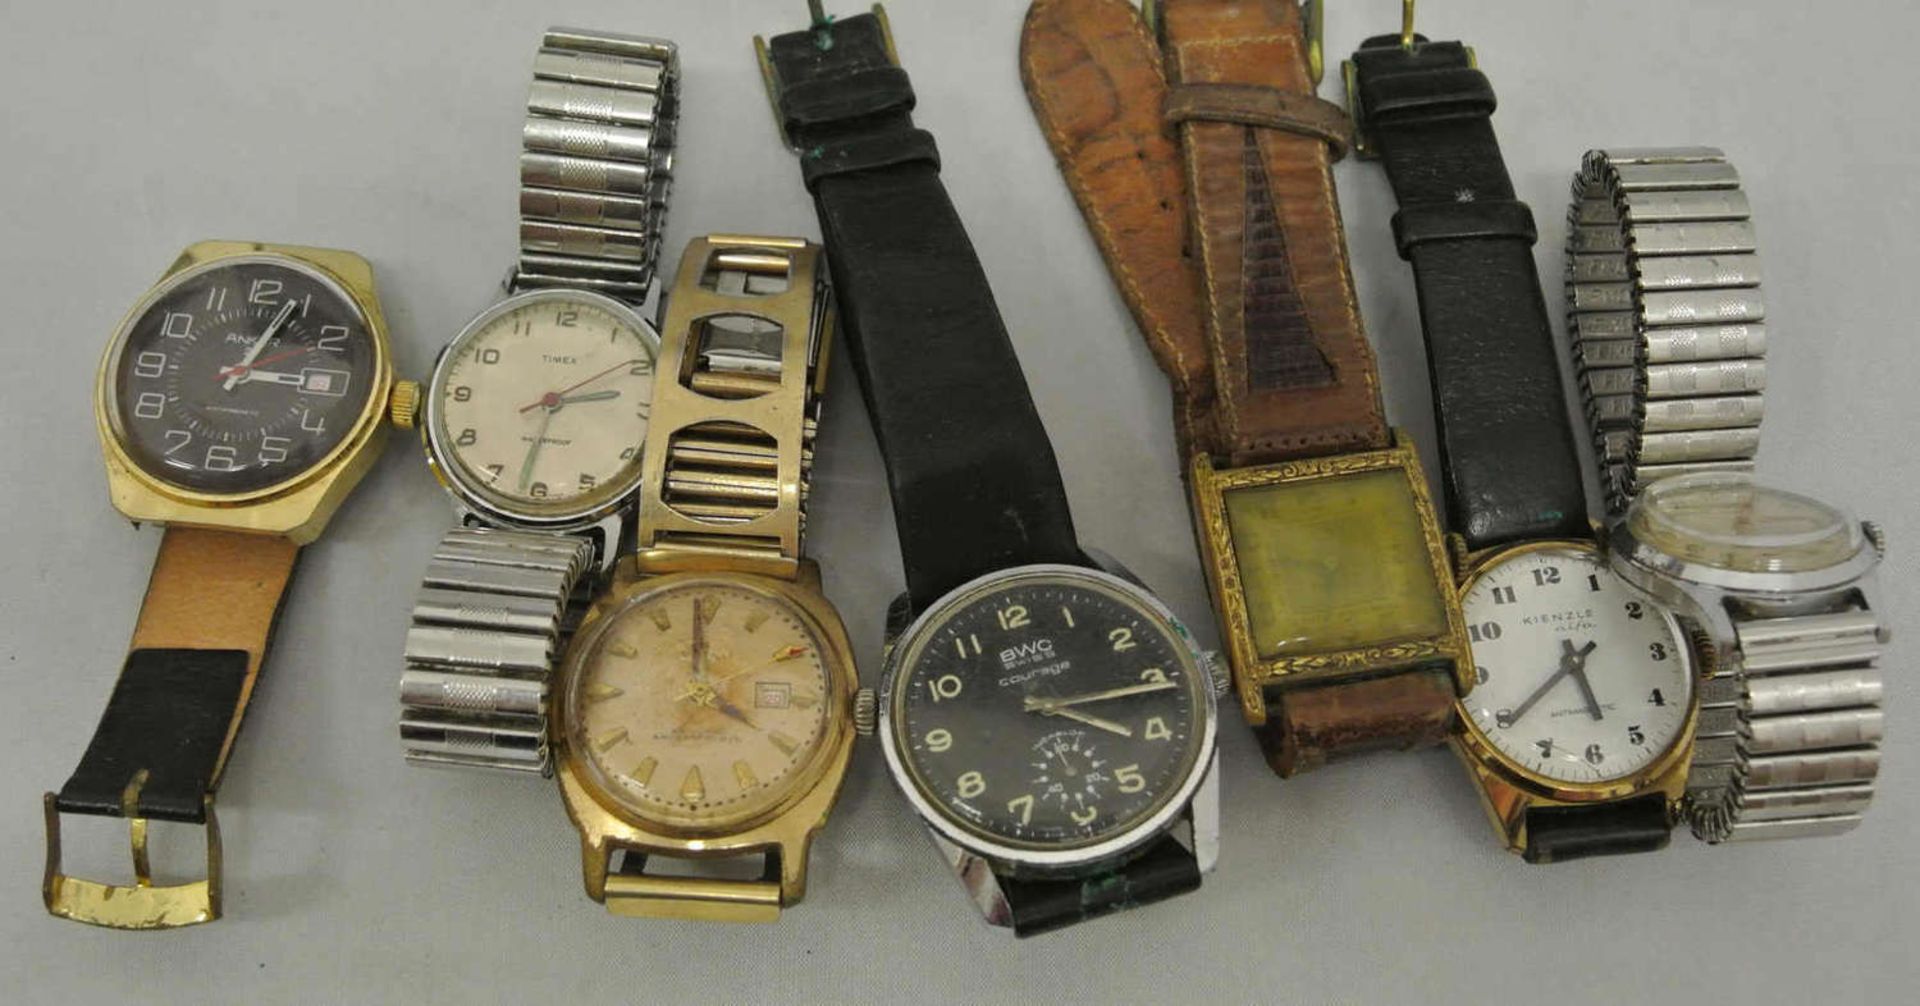 Lot Armbanduhren, mechanisch, insgesamt 7 Stück, dabei Kienzle, Junghans, BWC, Anker, etc. Alle